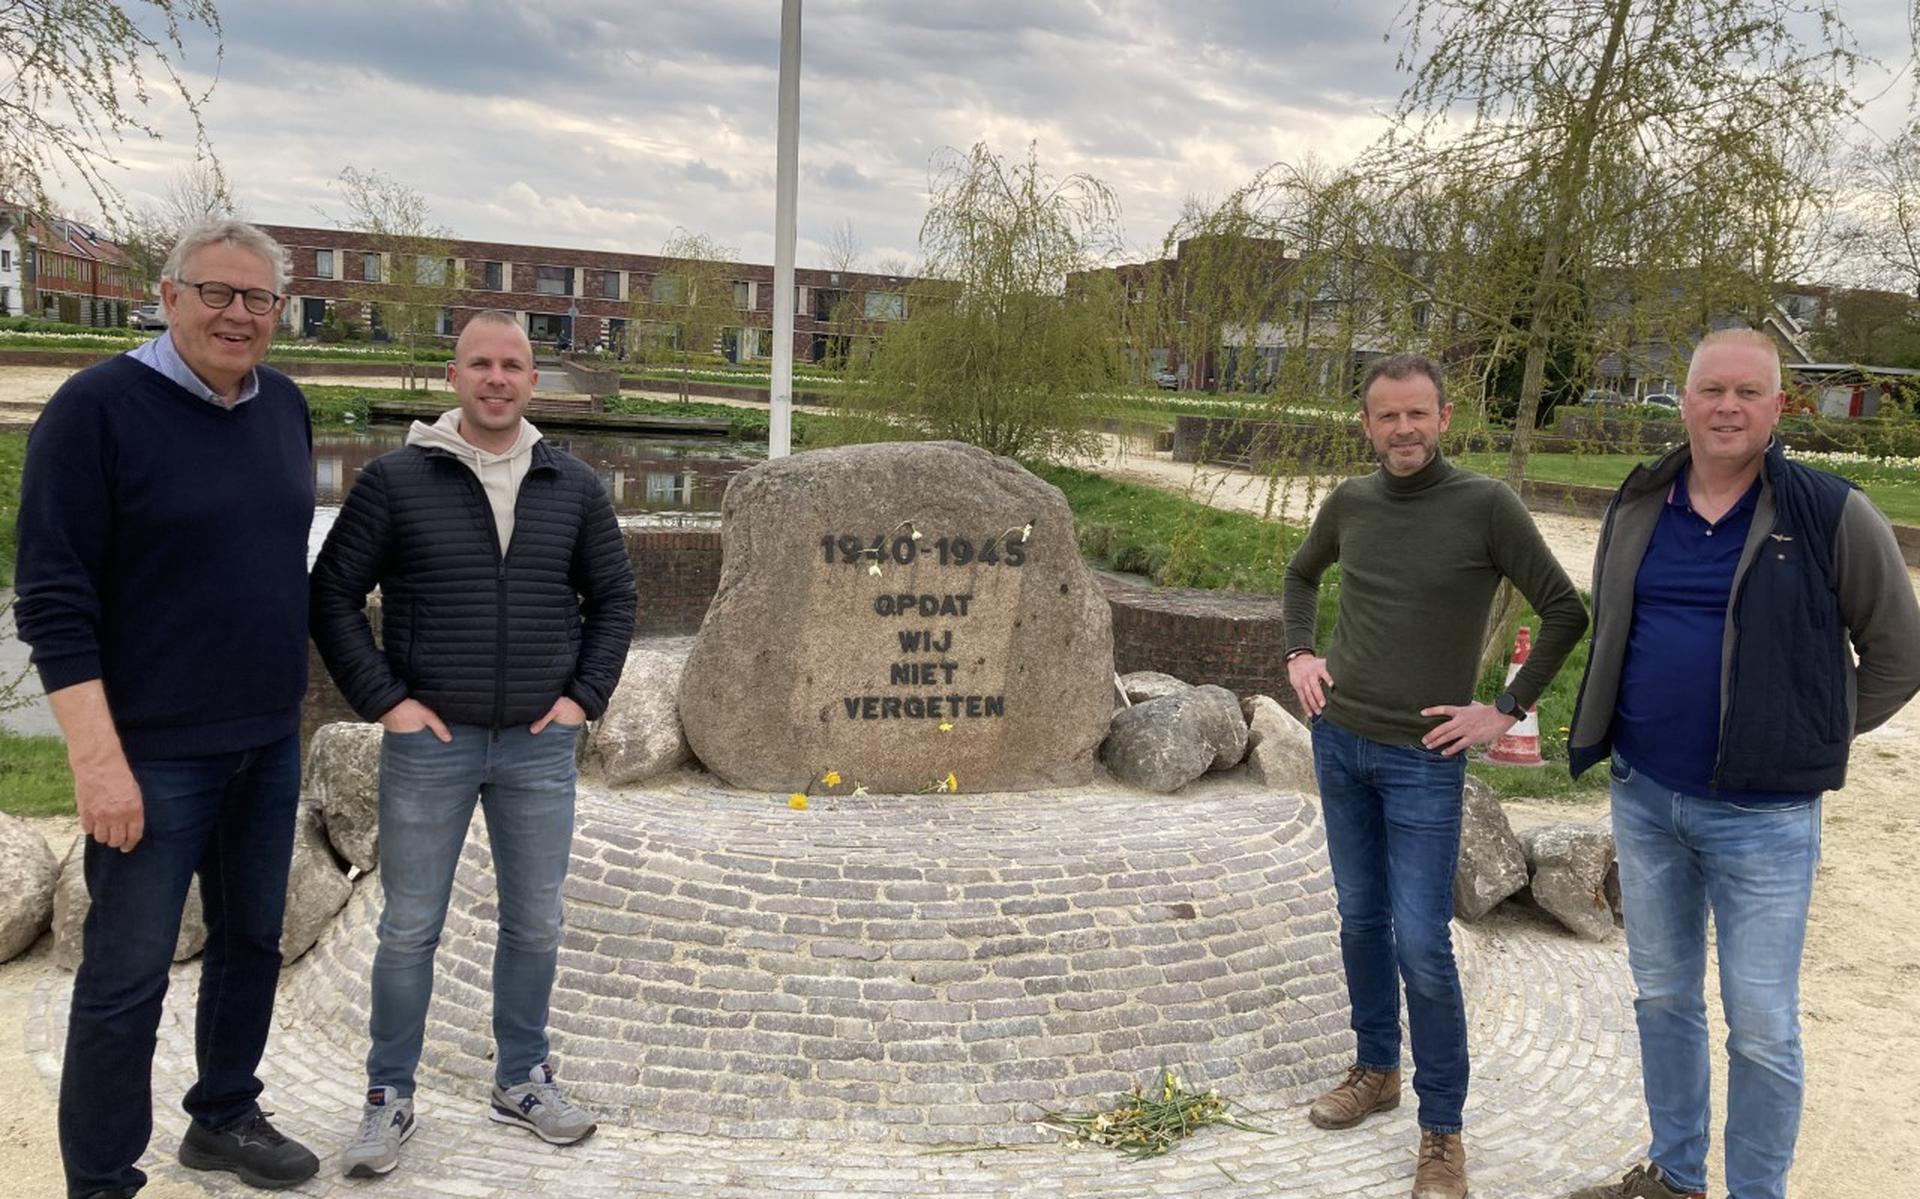 Het herdenkingsmonument op de nieuwe plek in het Wilhelminapark in Zuidhorn met de comitéleden (vlnr) Rolf Eikenhout, Mark van der Mark, Harmen Boeijenk en Marco Janssen.